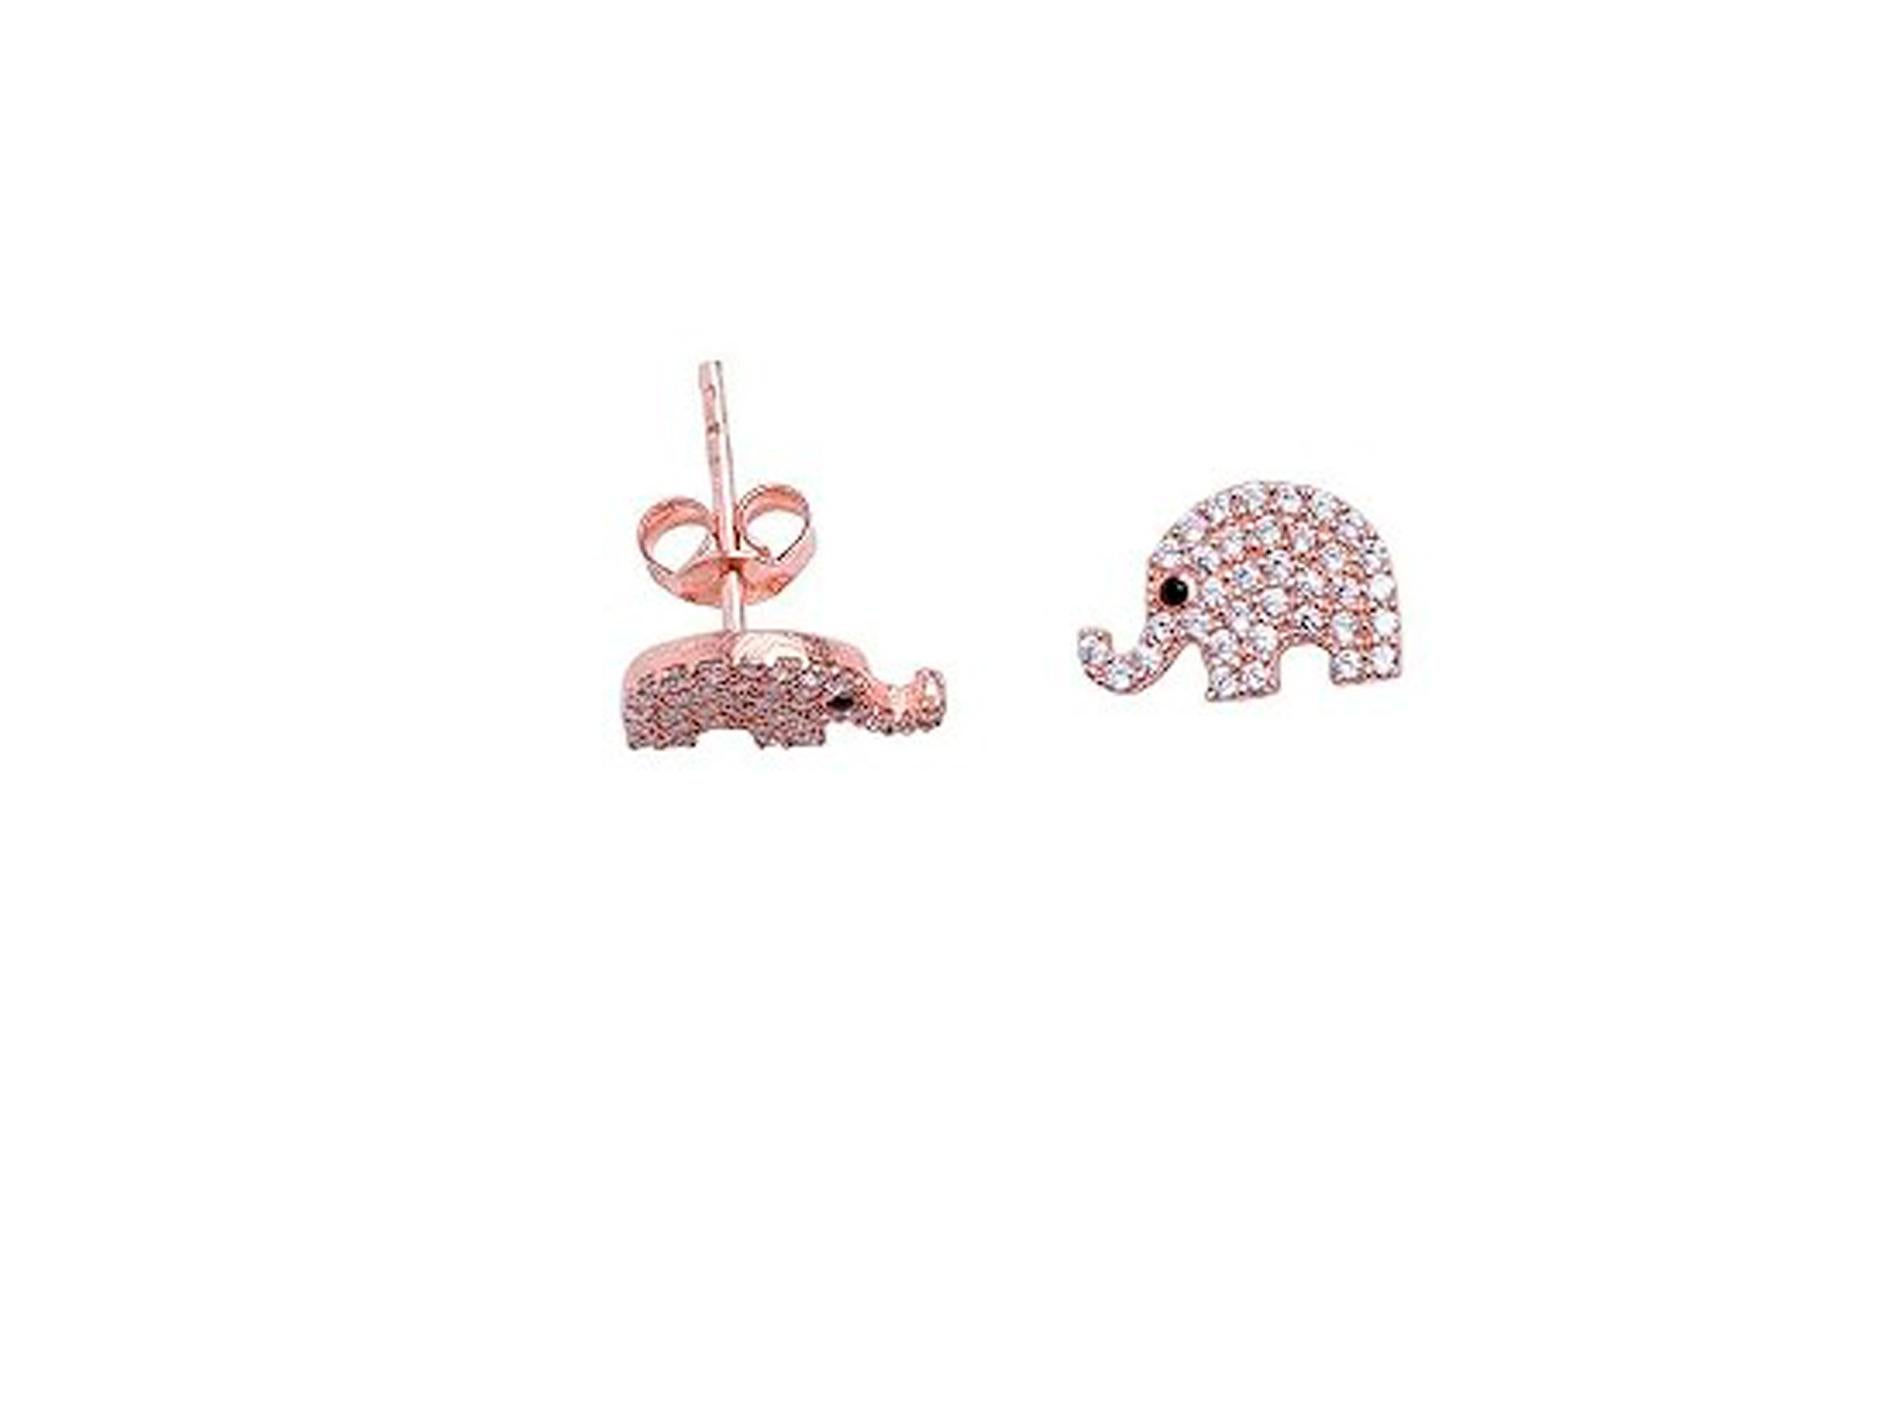 Round Cut Elephant earrings studs in 14k gold. 